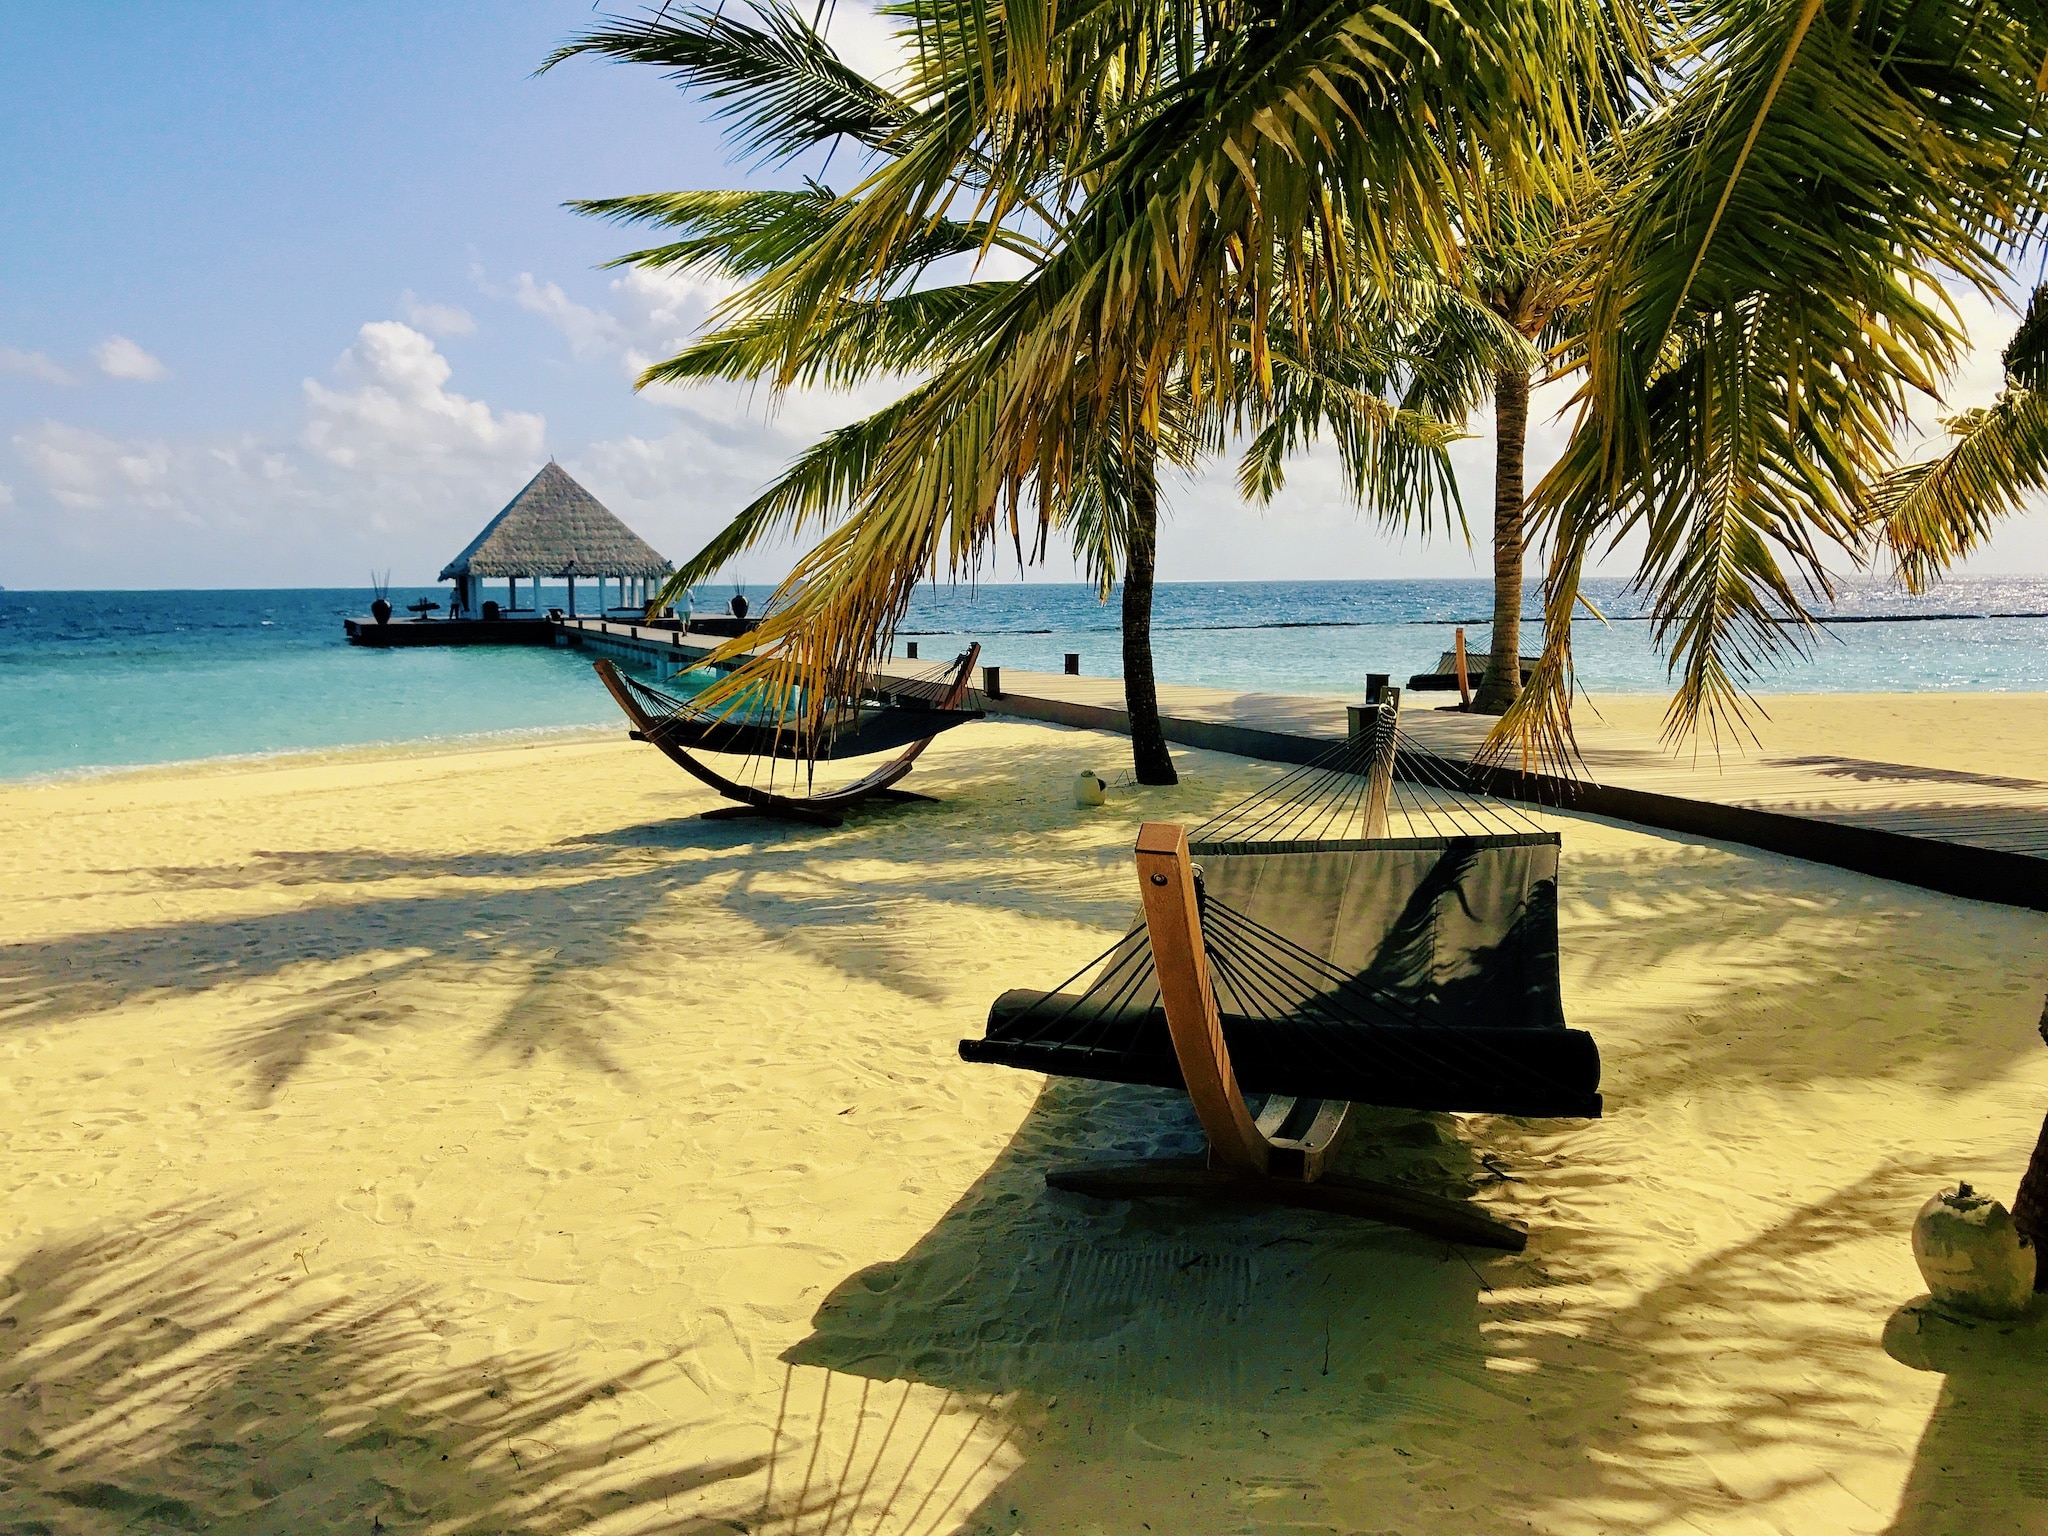 Zarezerwuj tanio wakacje na Malediwach – wskazówki i doświadczenia dotyczące rajskiej wyspy